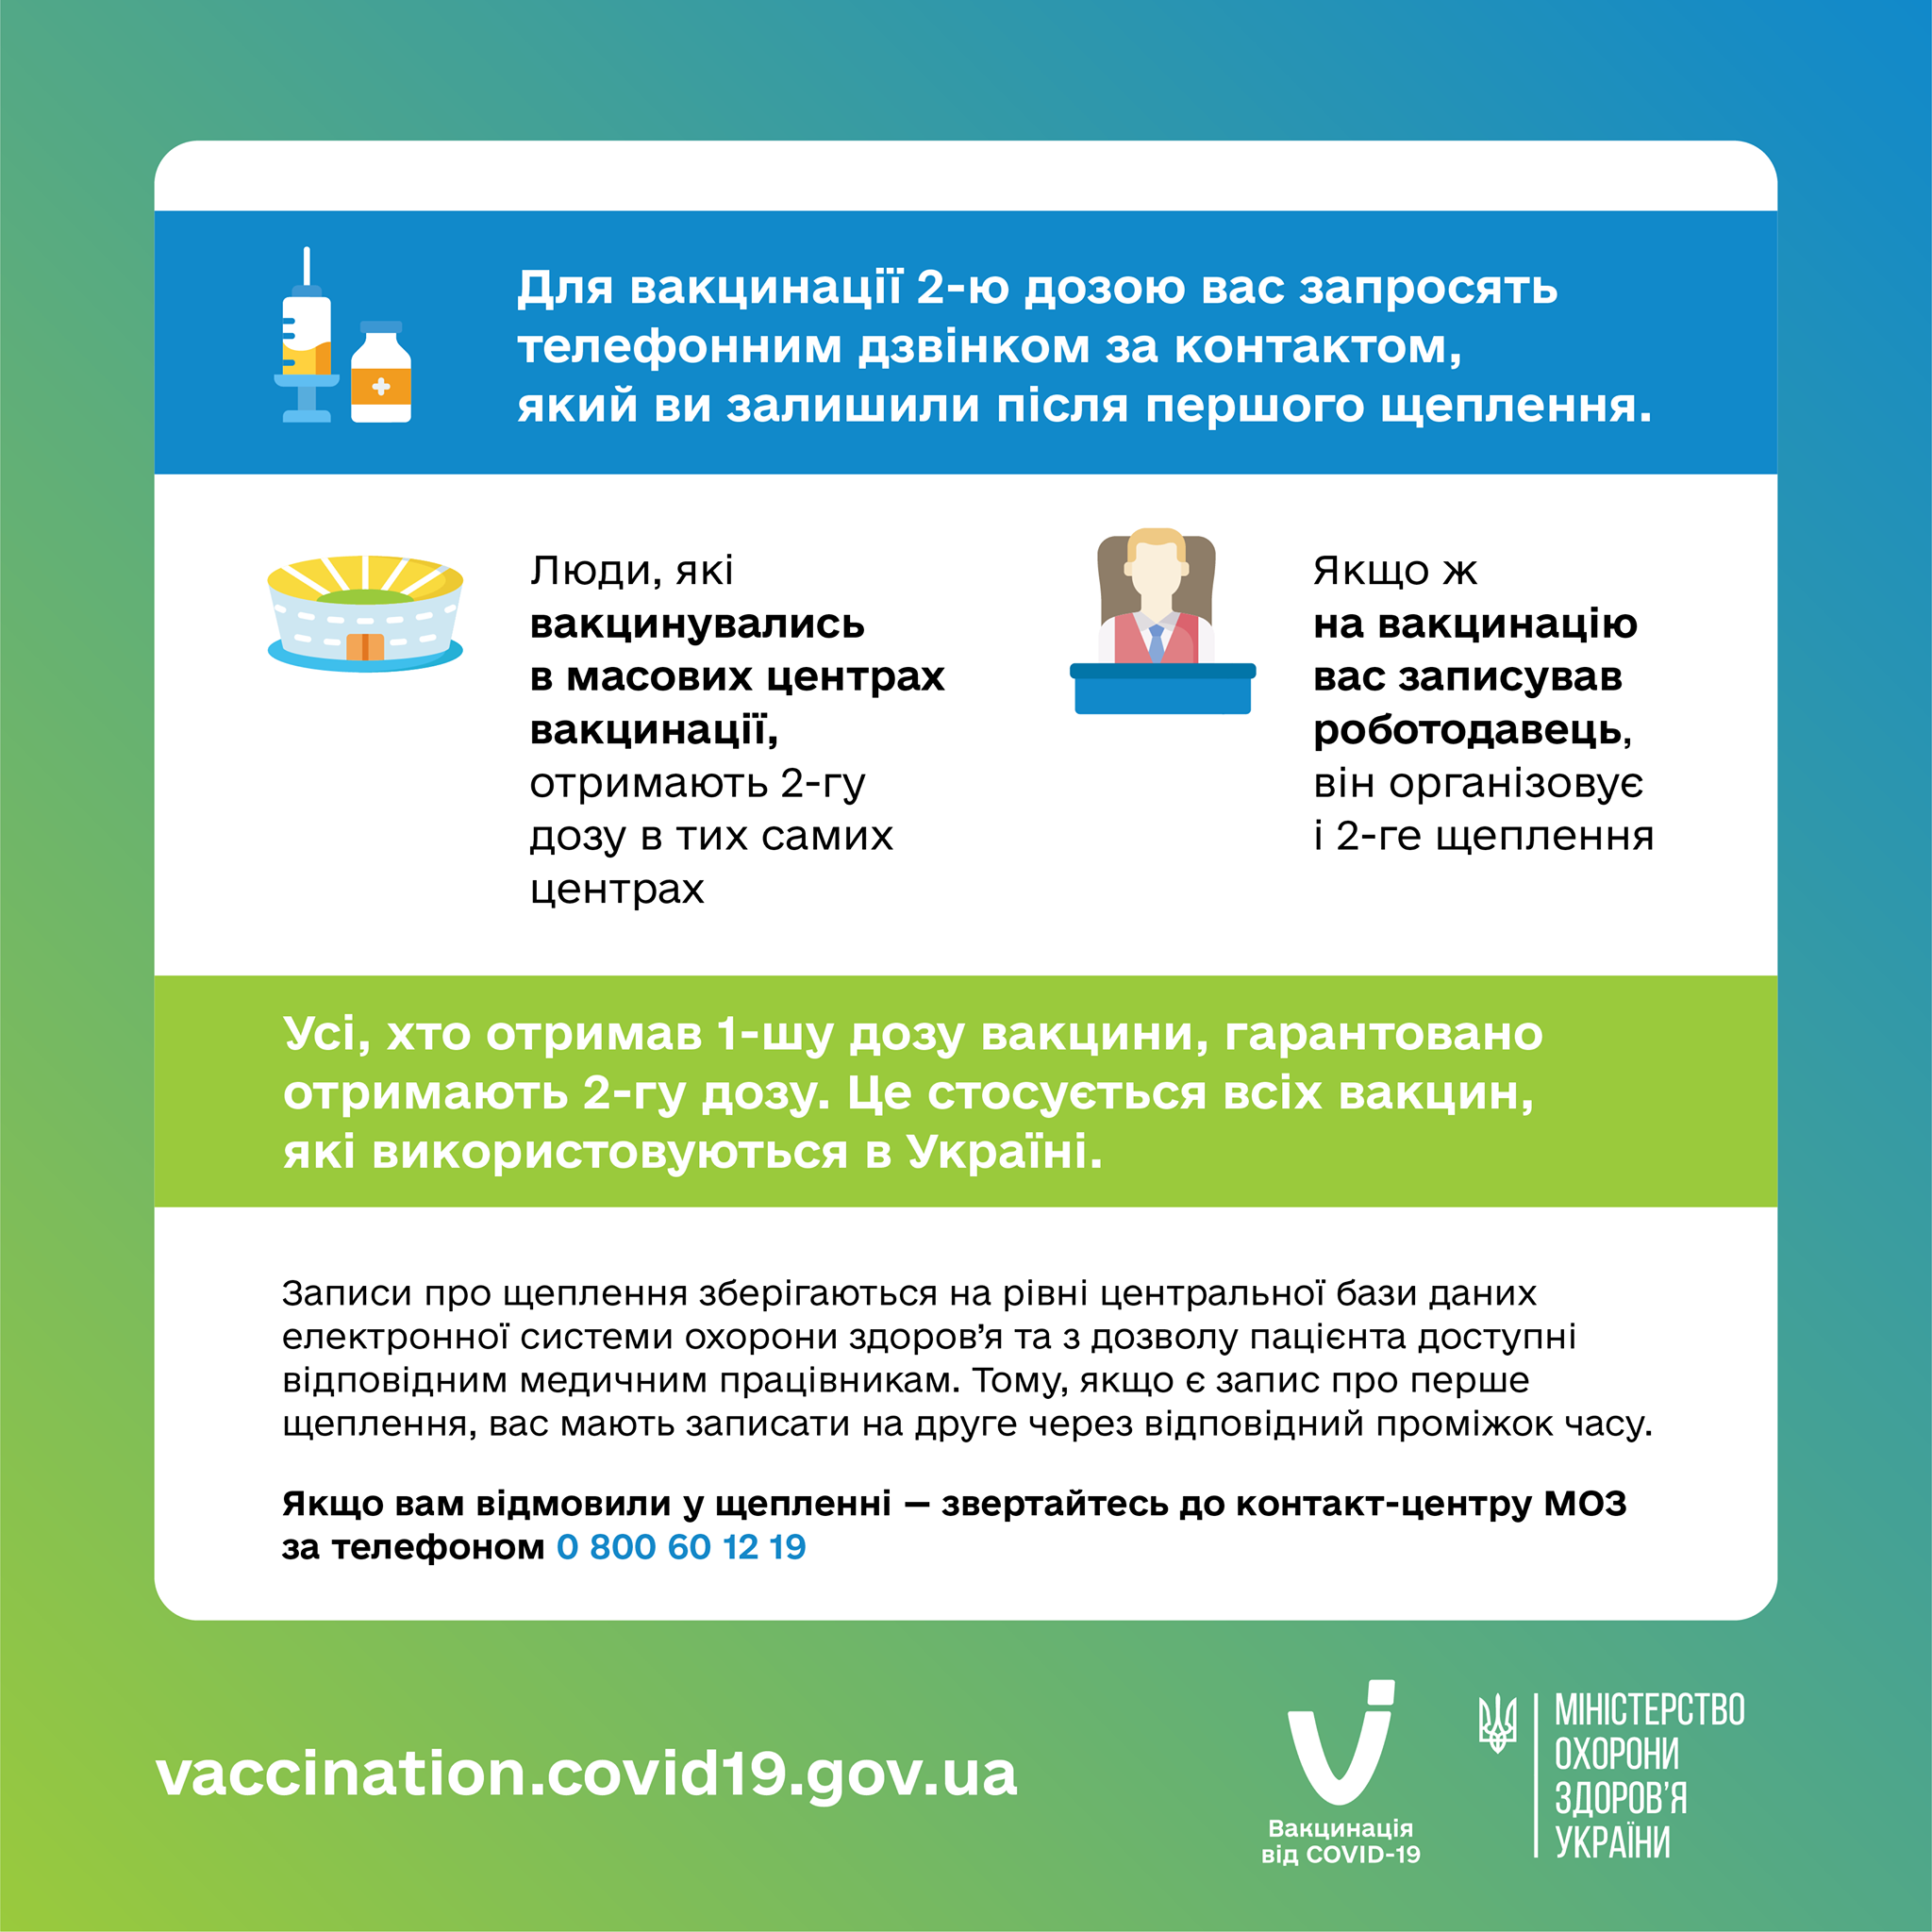 Как получить вторую дозу вакцины от коронавируса. Скриншот из фейсбука Минздрава